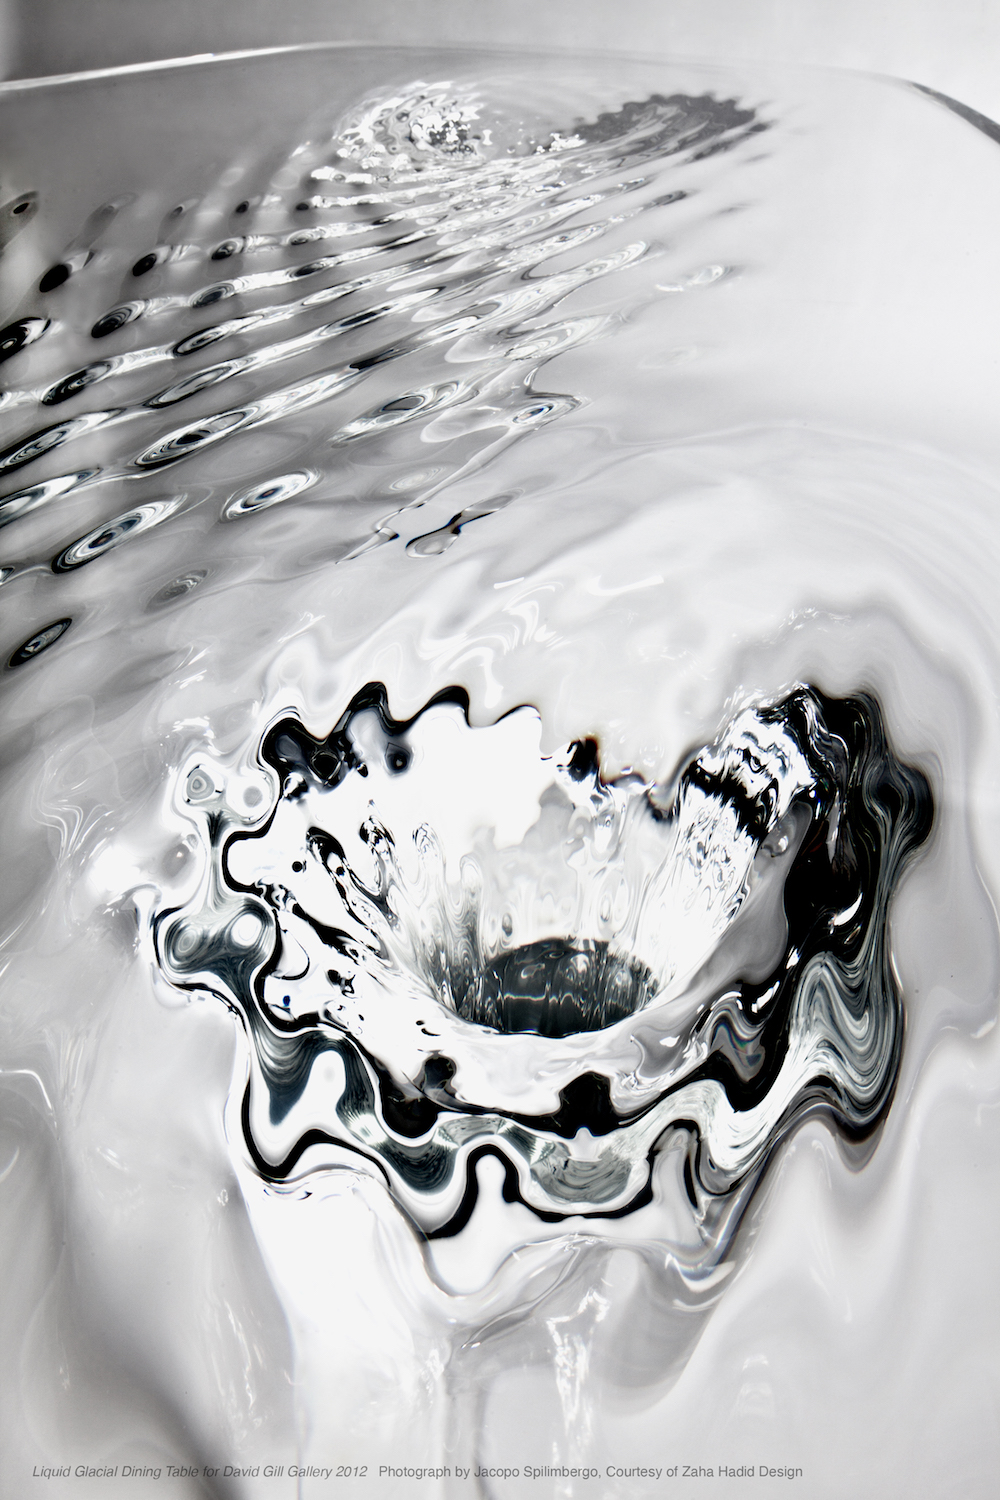 液态冰川桌，大卫·吉尔画廊，2012 摄影：Jacopo Spilimbergo，扎哈·哈迪德设计供图